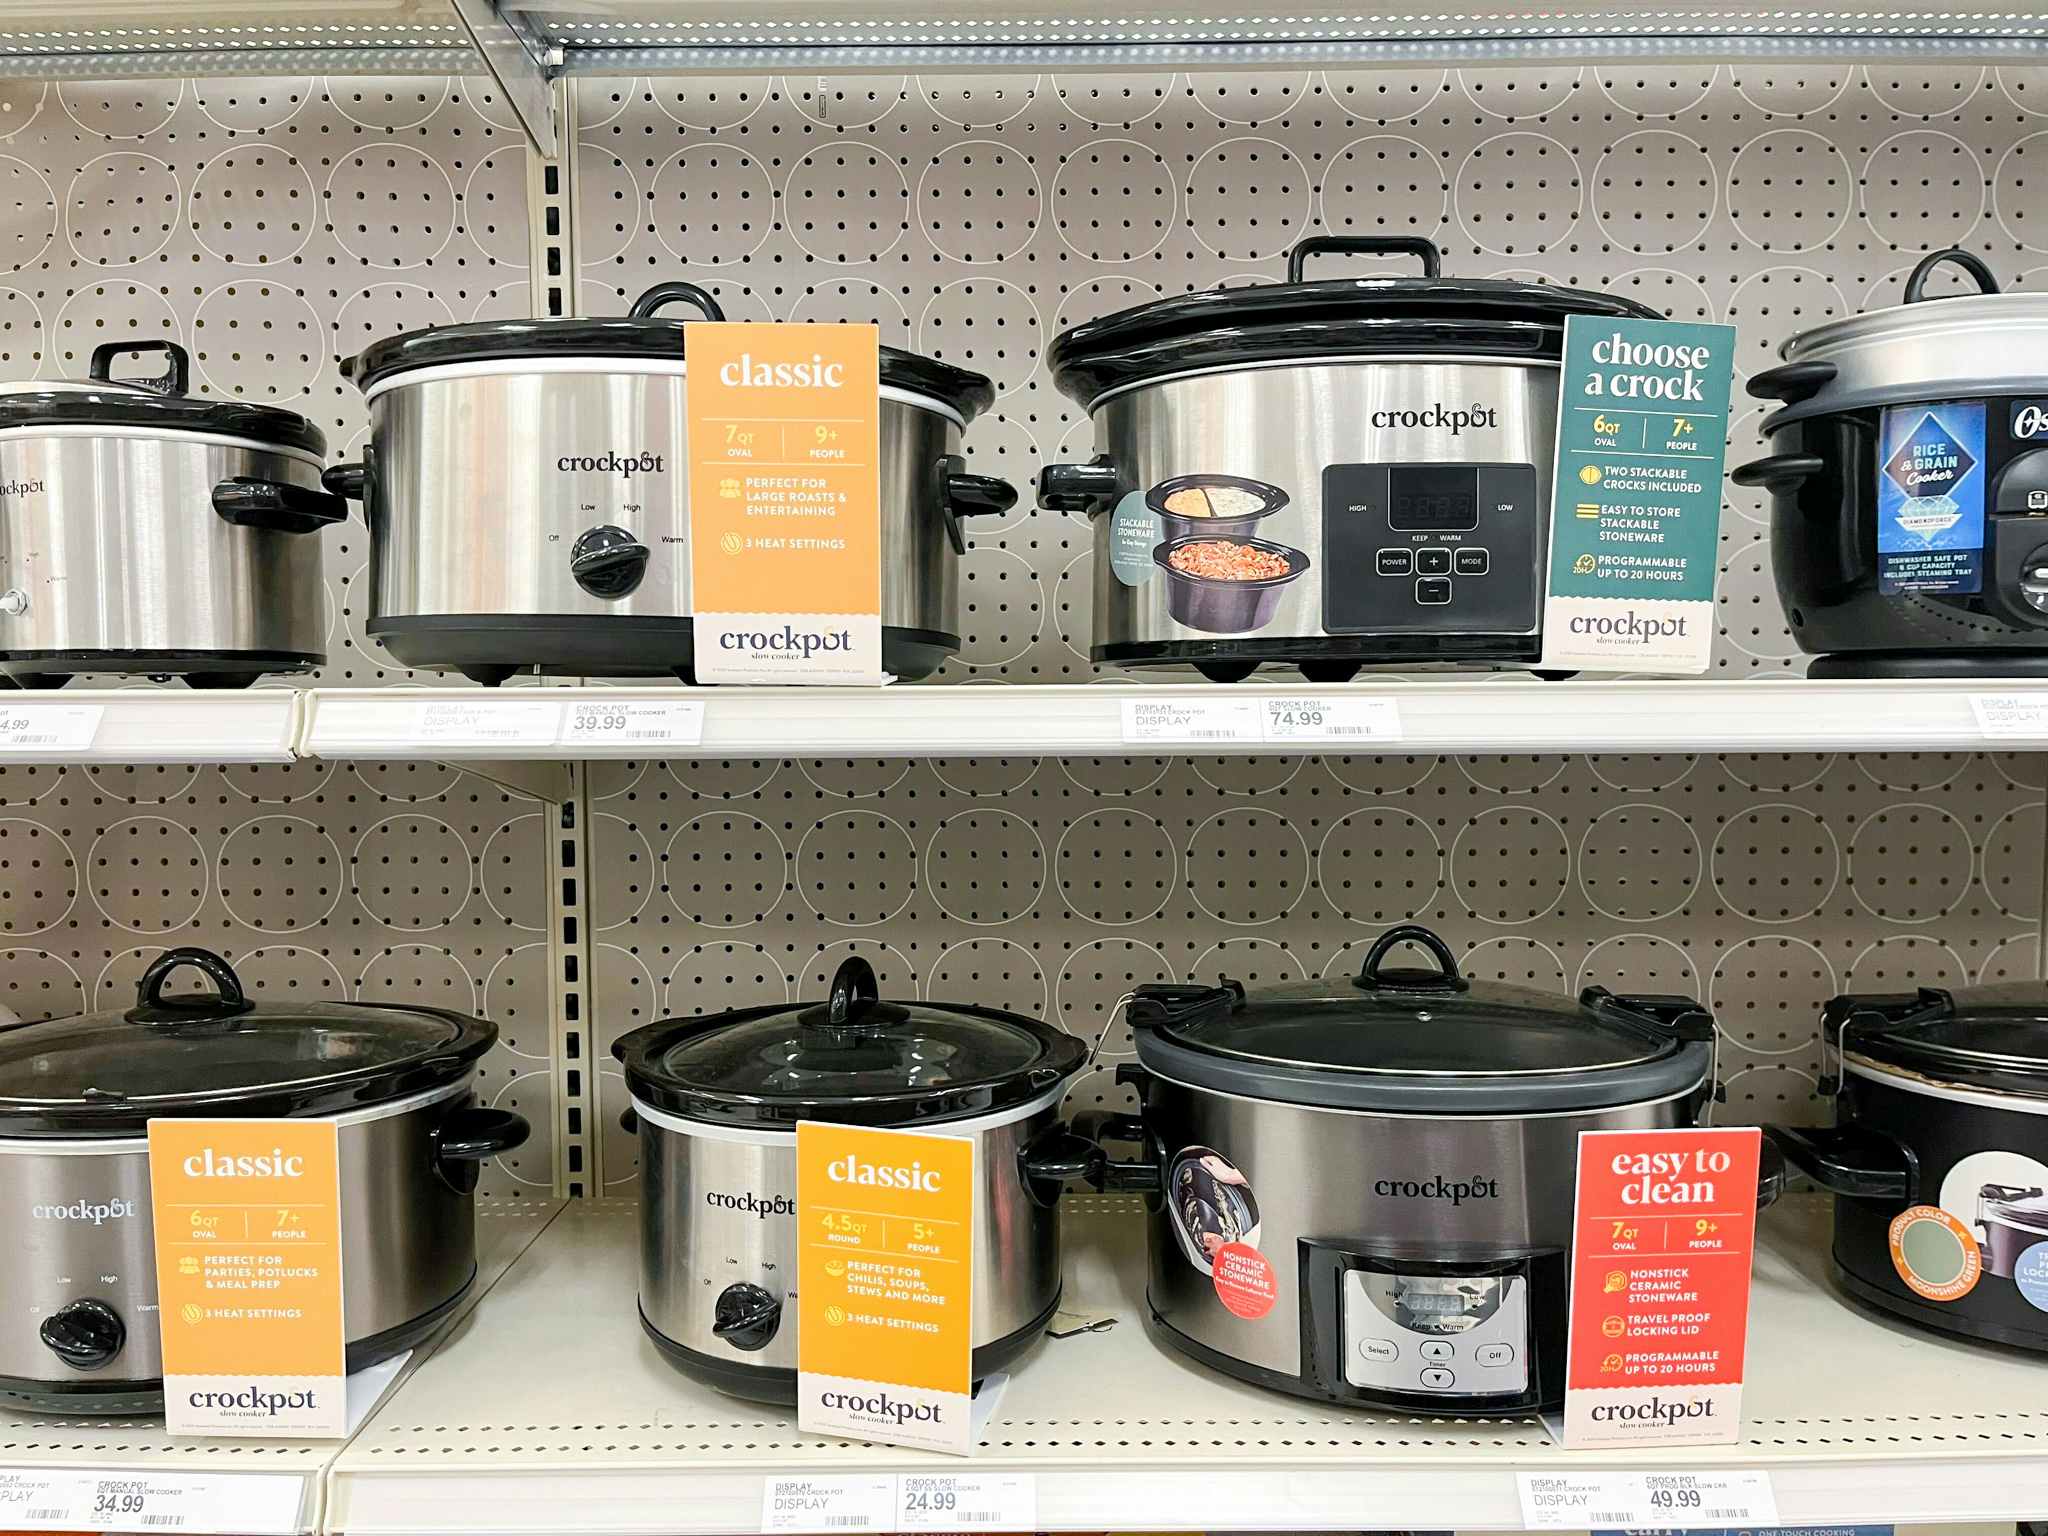 target shelf with various crock pot models